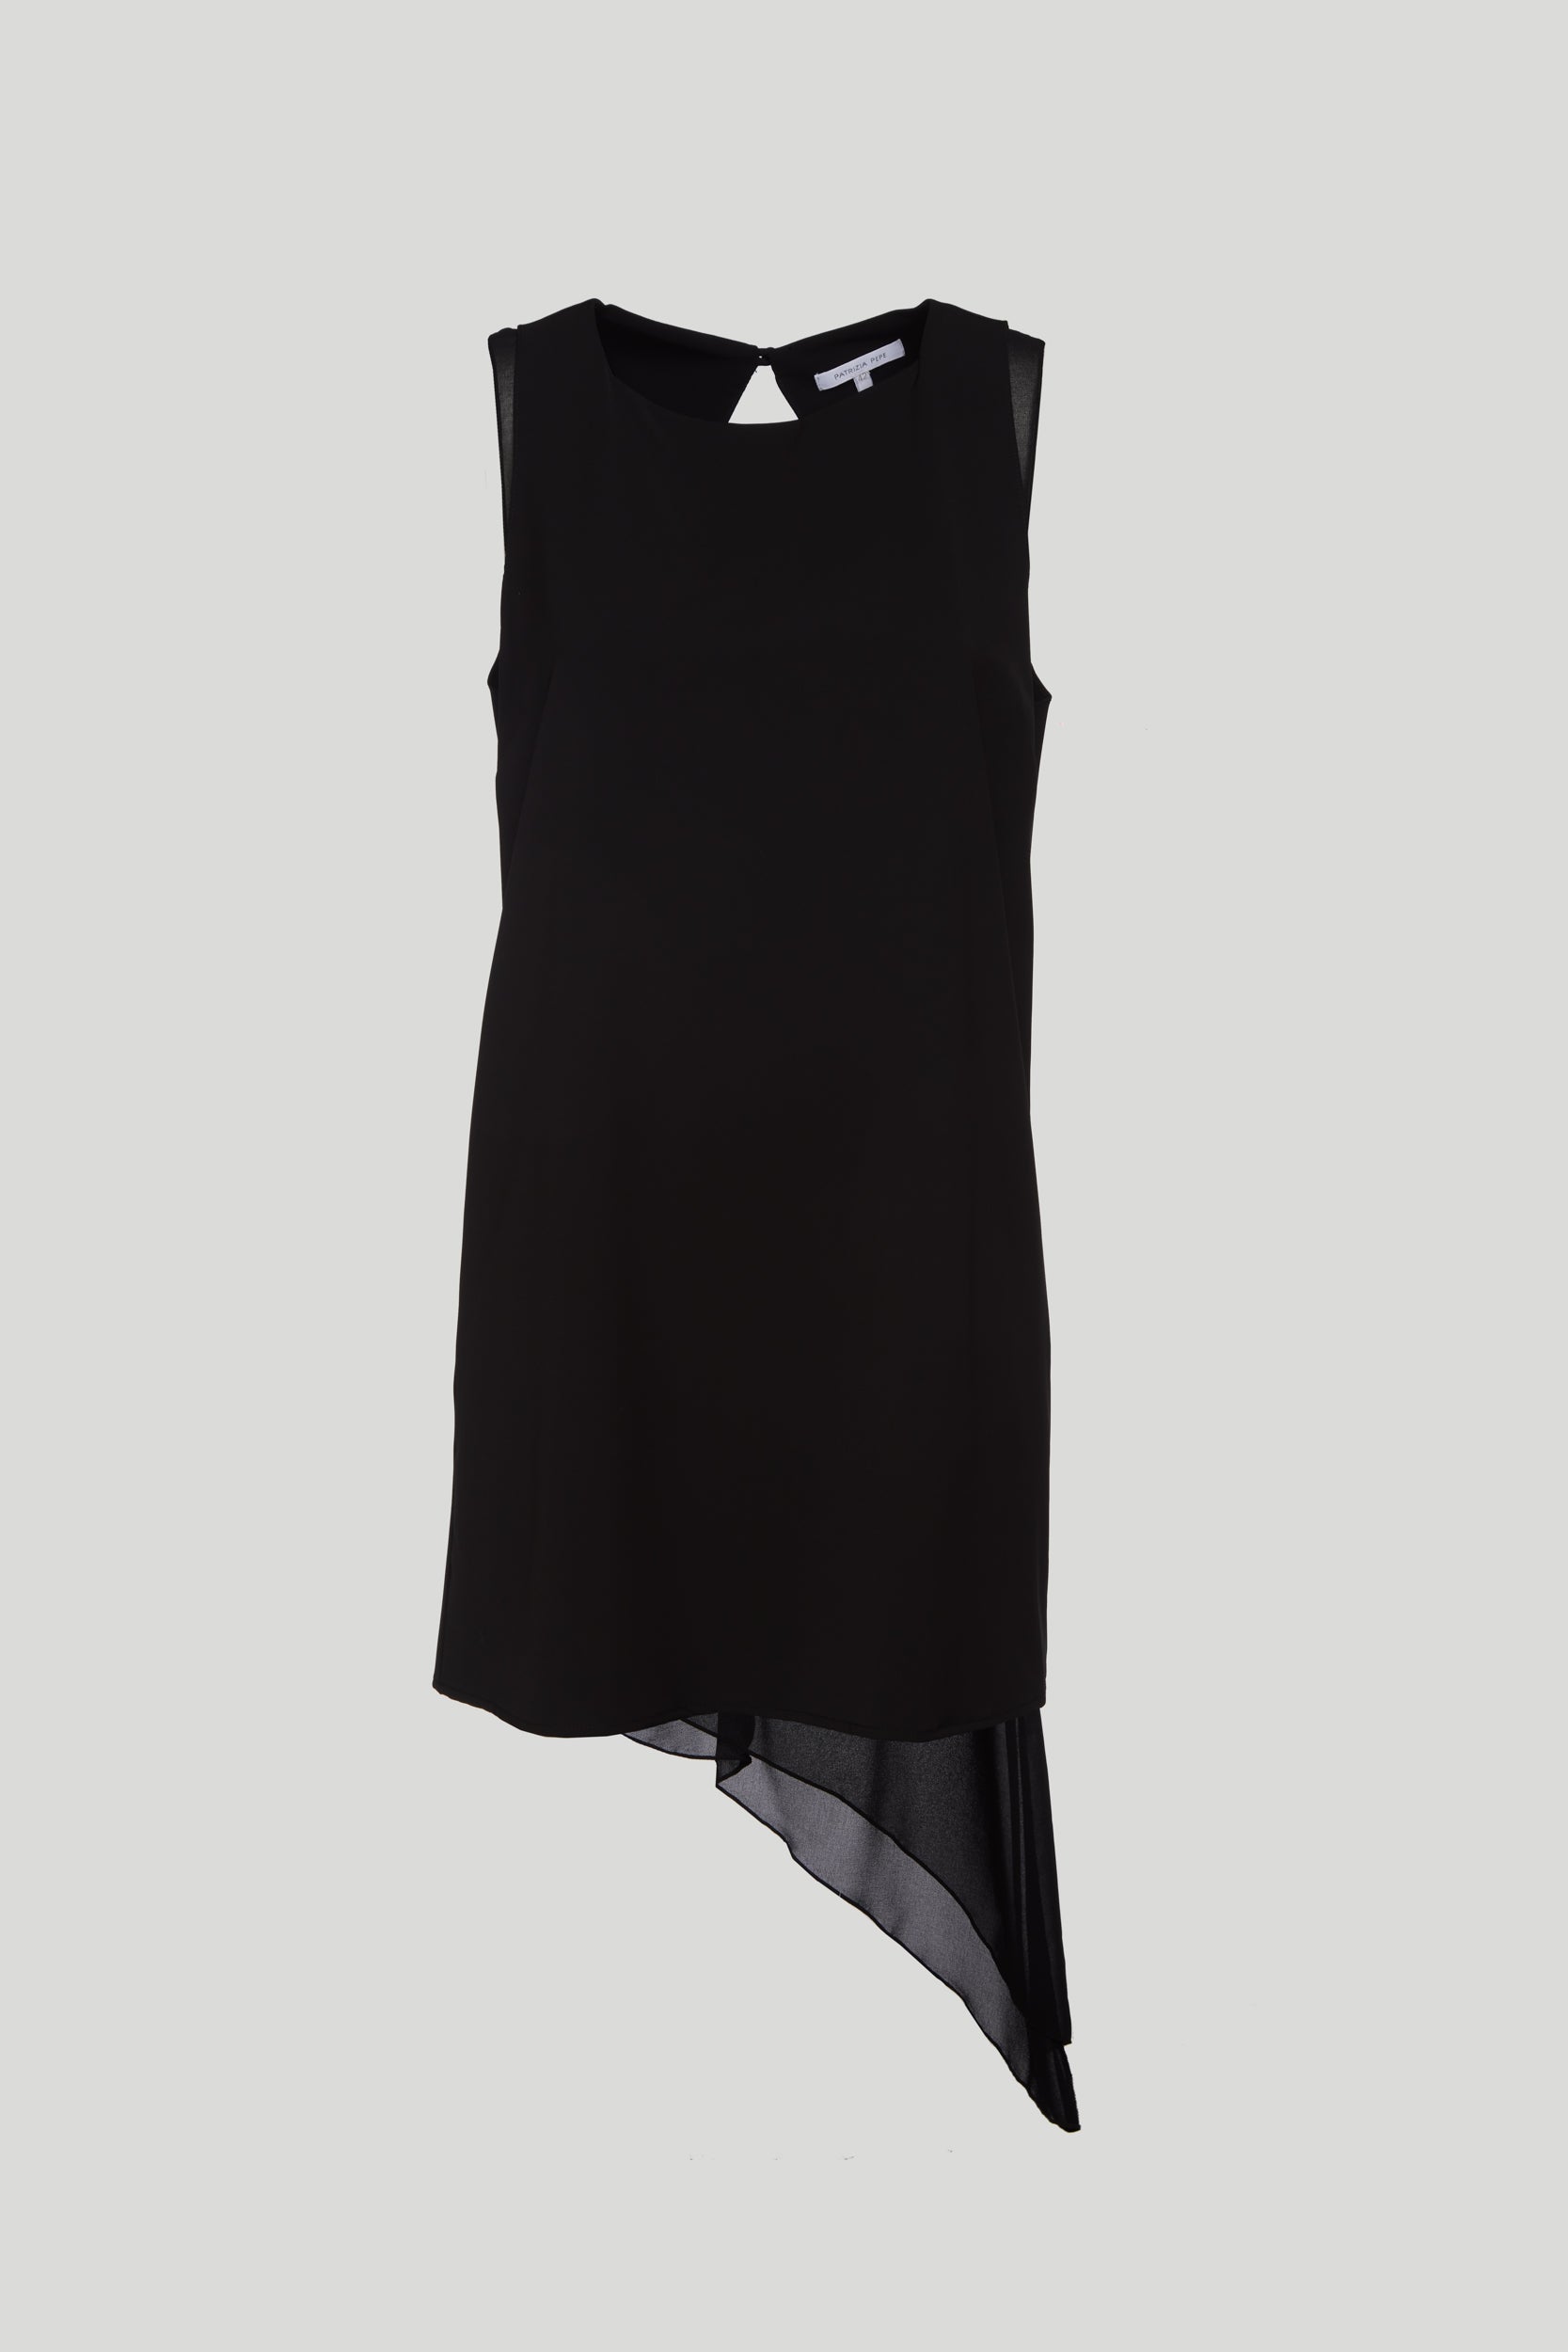 PATRIZIA PEPE Black Asymmetrical Dress